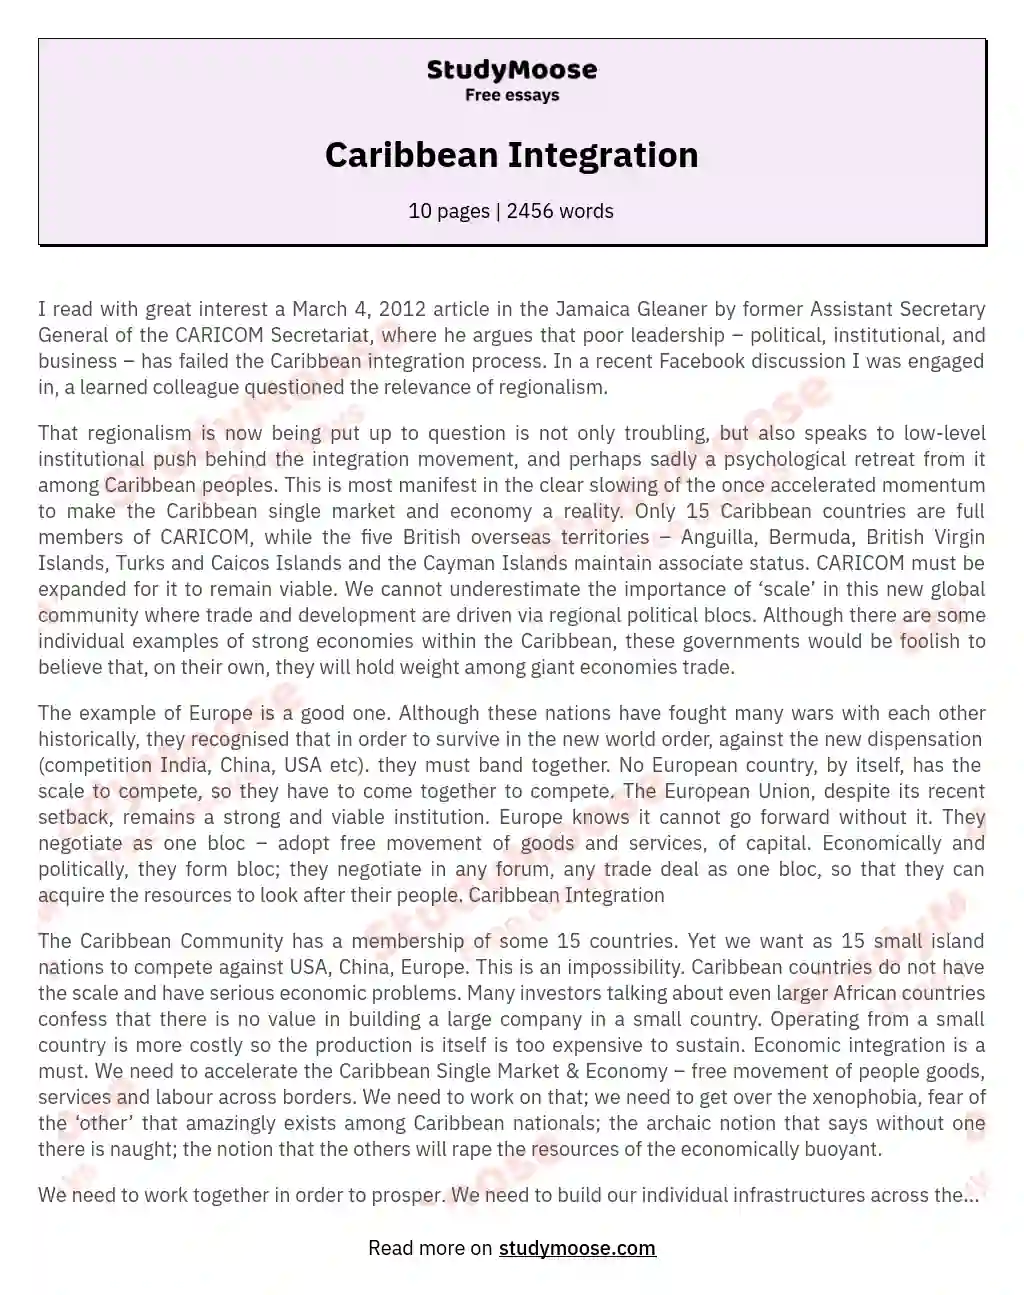 Caribbean Integration essay